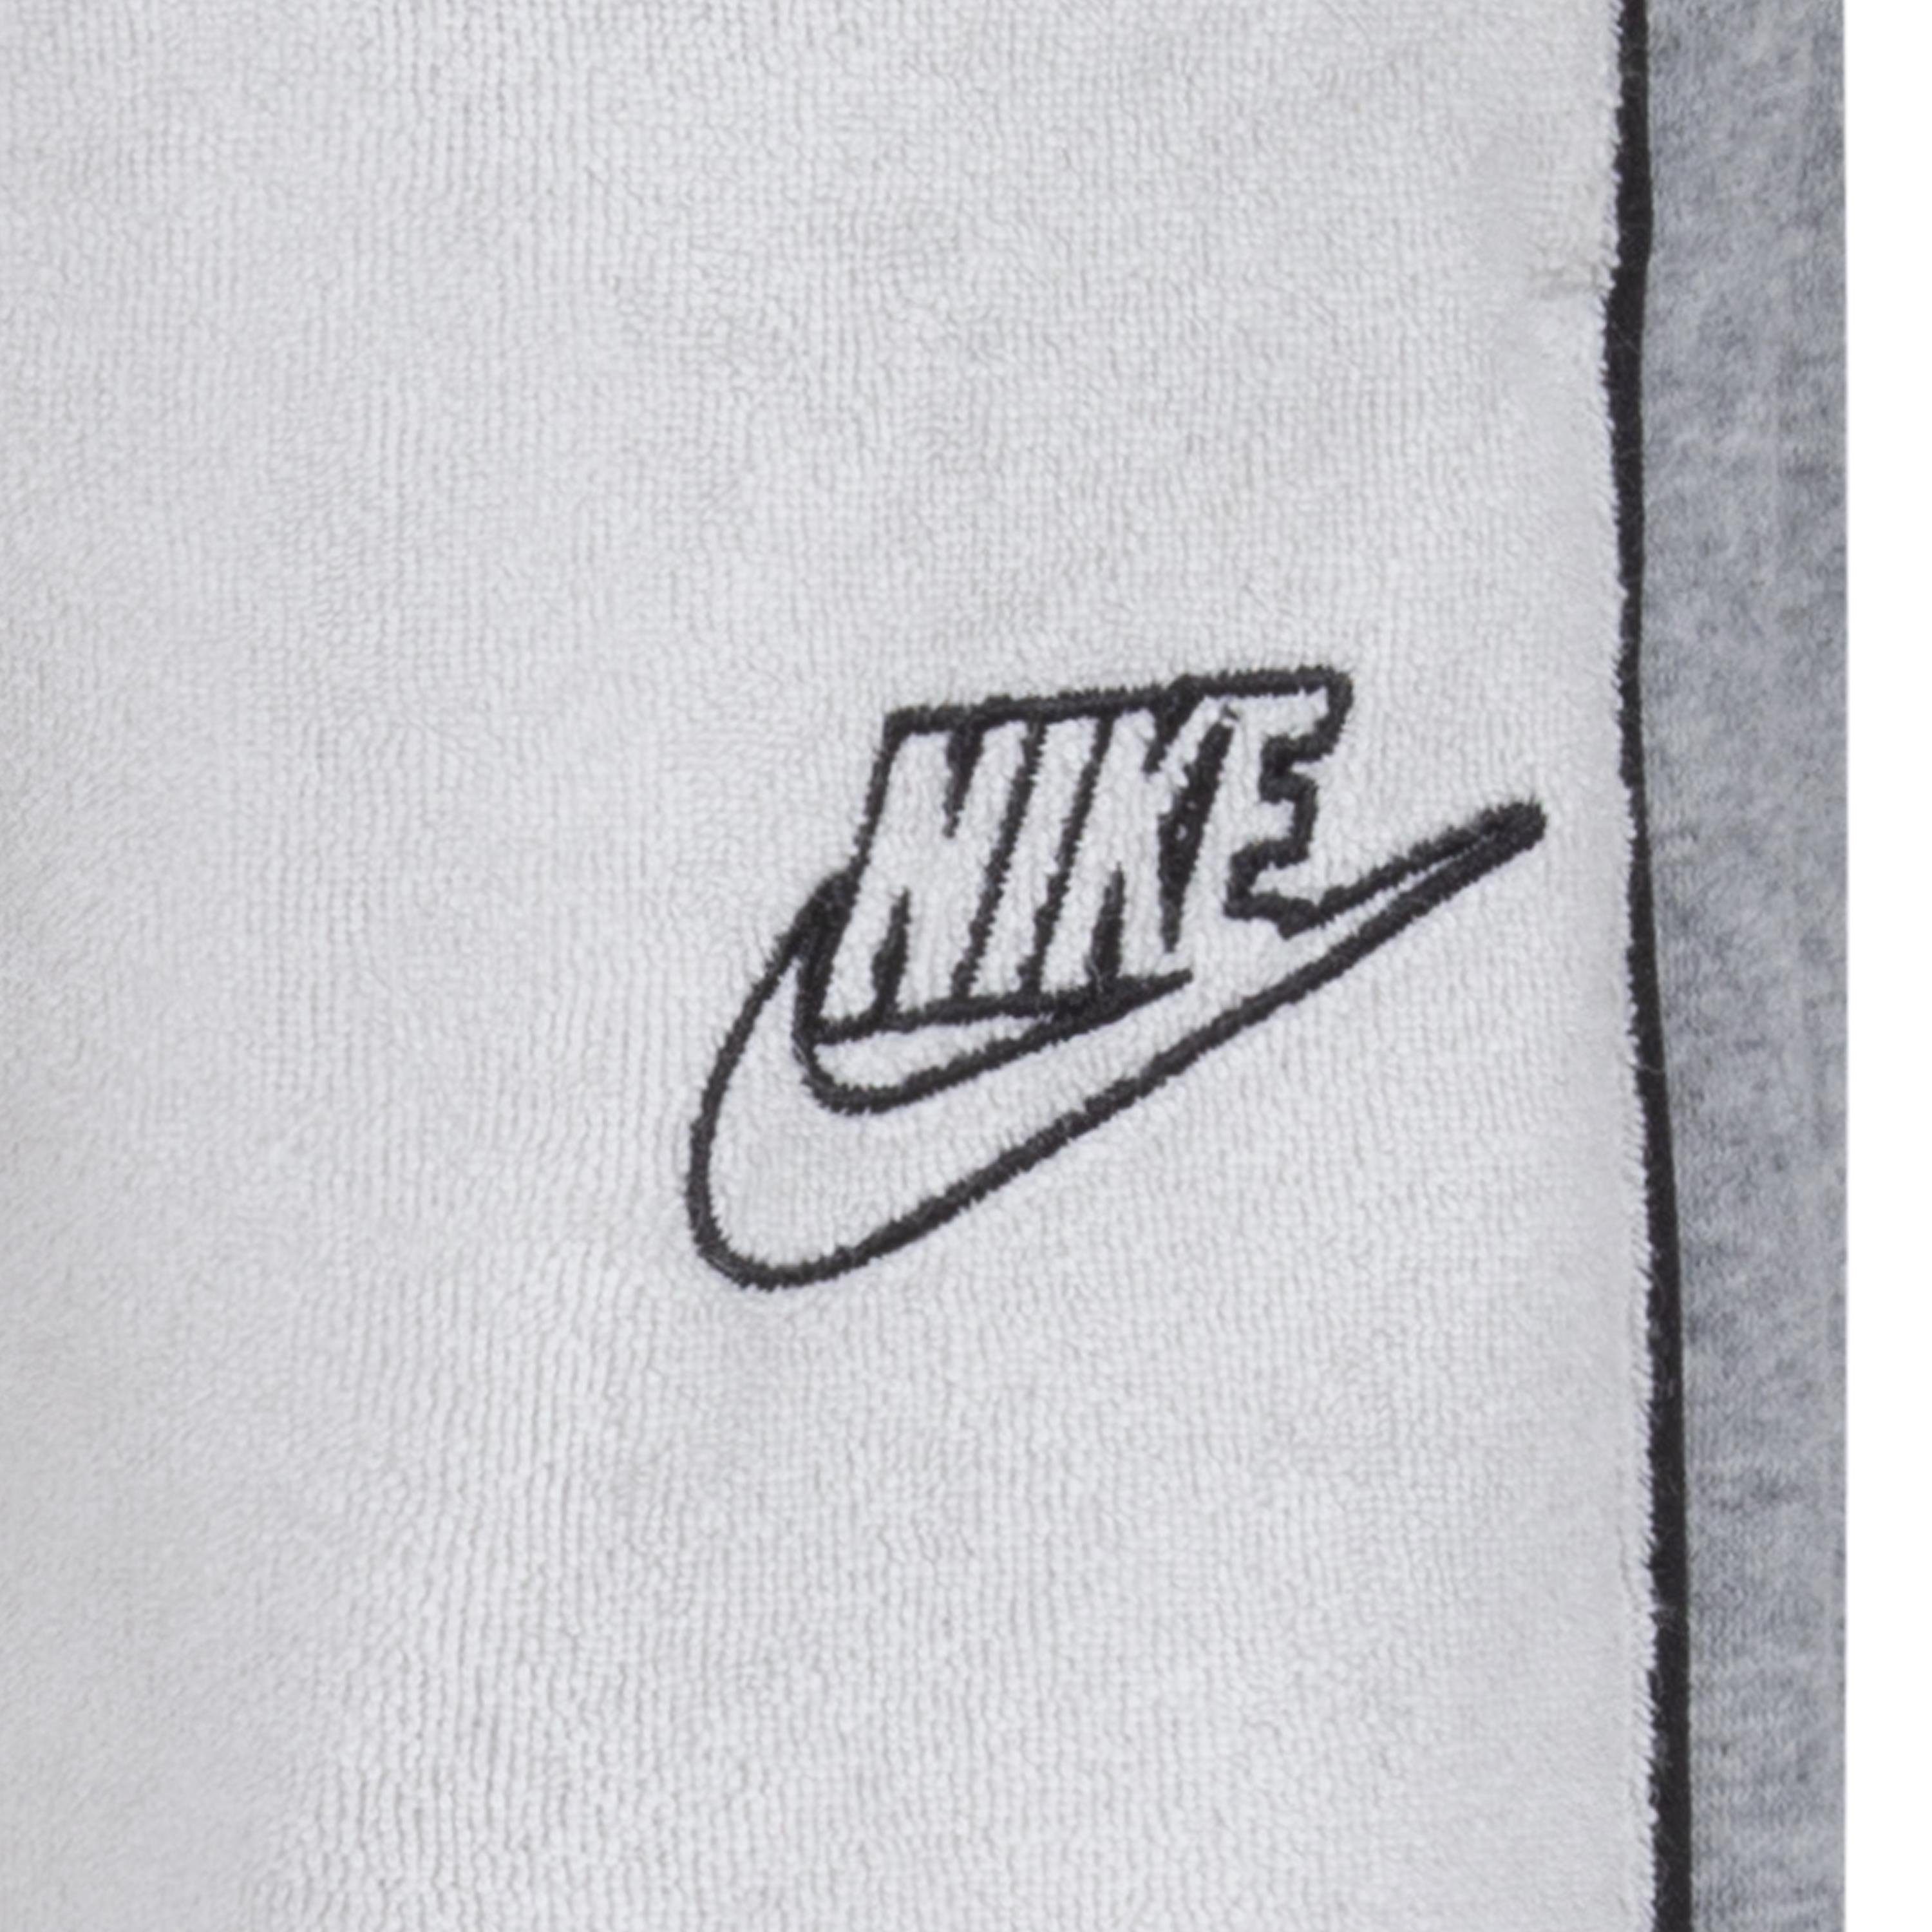 Nike Sportswear Jogginganzug (Set, 2-tlg) grey